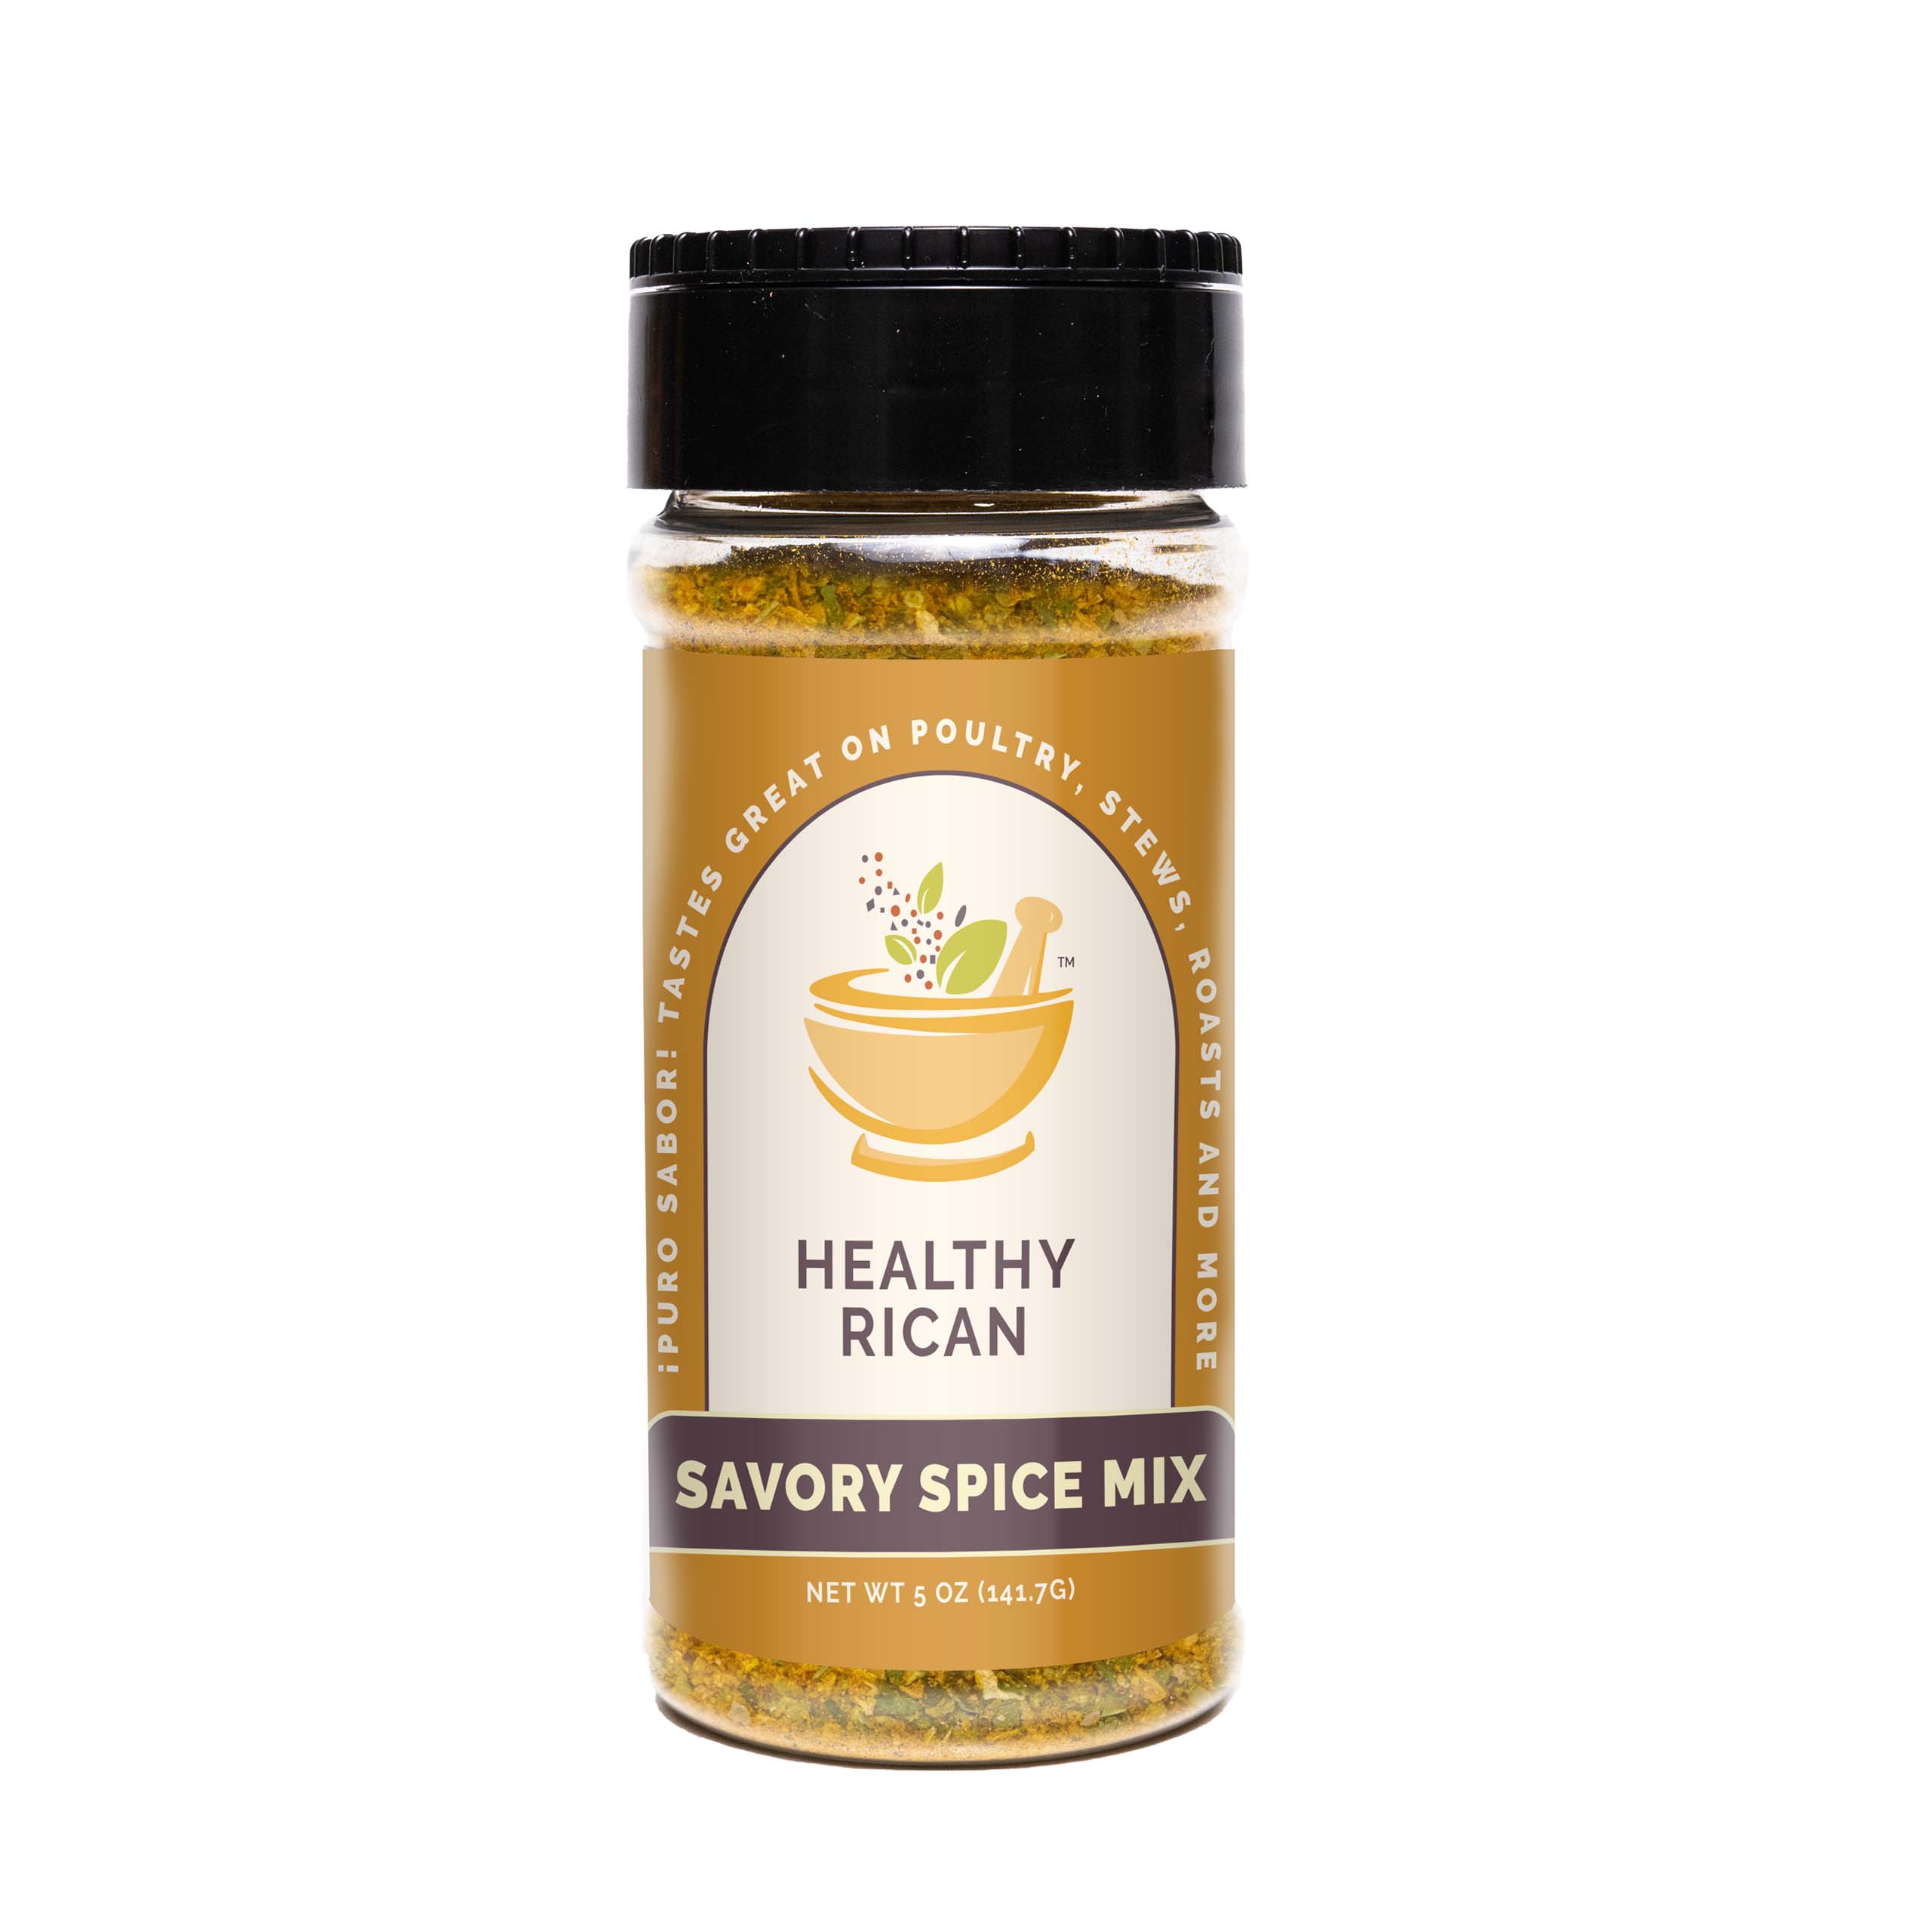 Savory Seasonings - Roaring Fork Spice Co